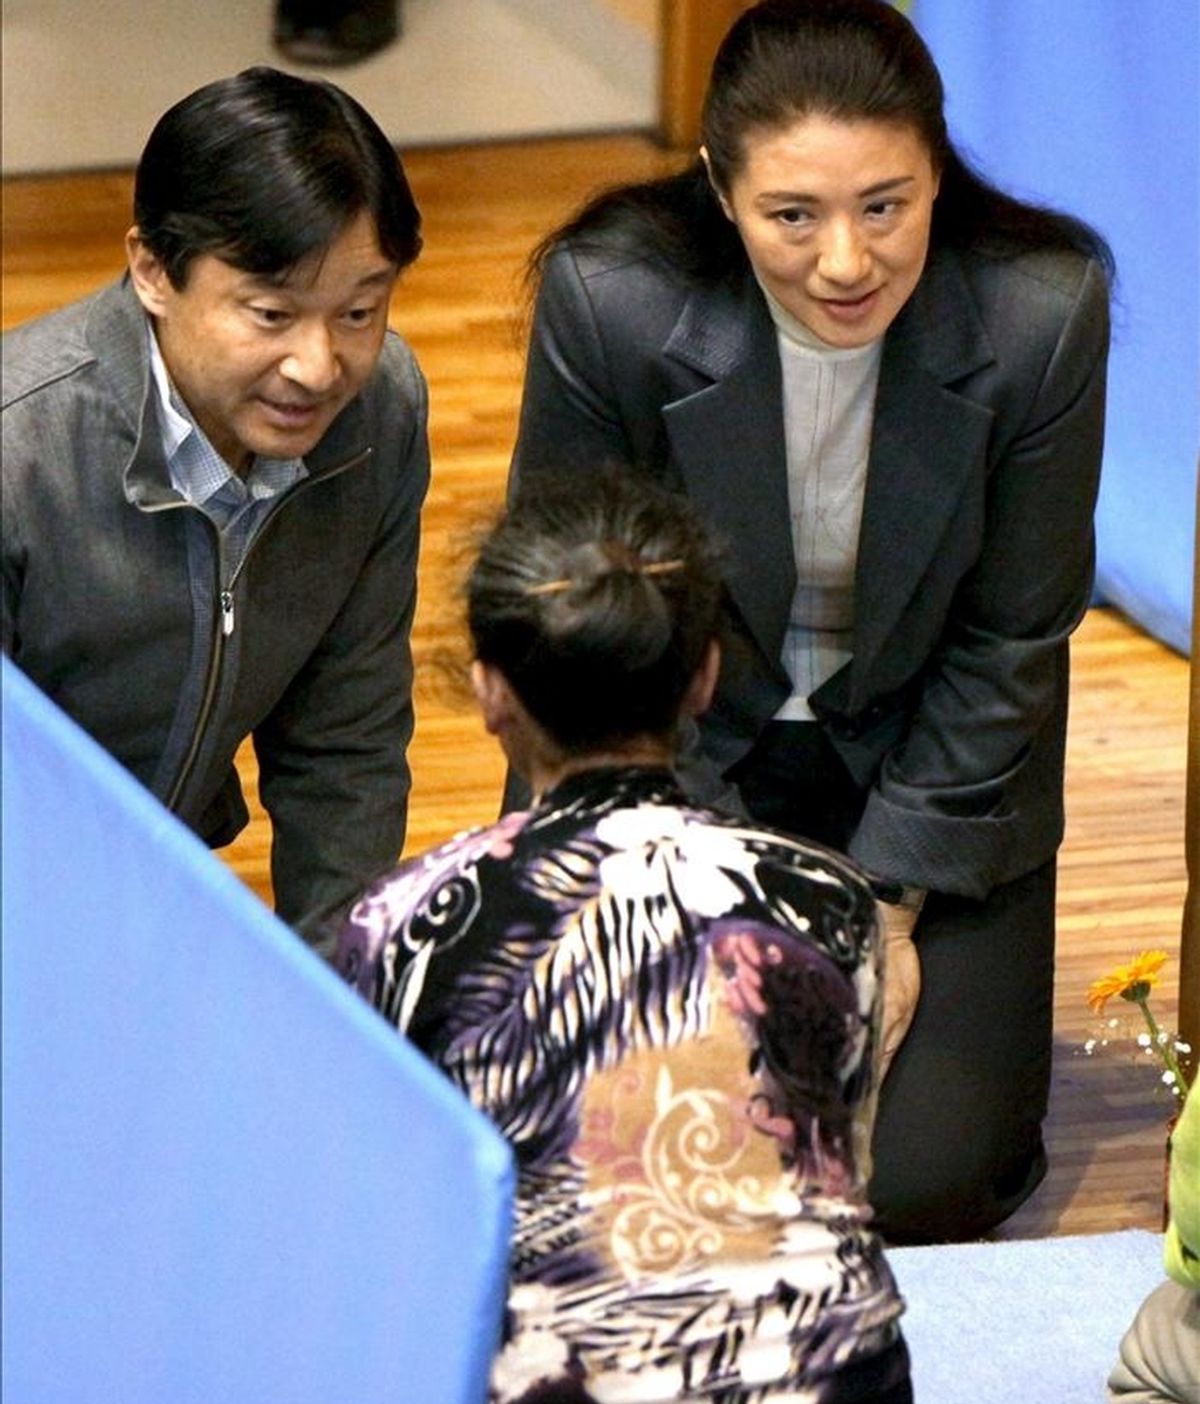 El príncipe heredero japonés Naruhito (izq) y su esposa, la princesa Masako (dcha), conversan con damnificados del terremoto en un centro para evacuados en Tokio (Japón) hoy, miércoles 6 de abril de 2011. EFE